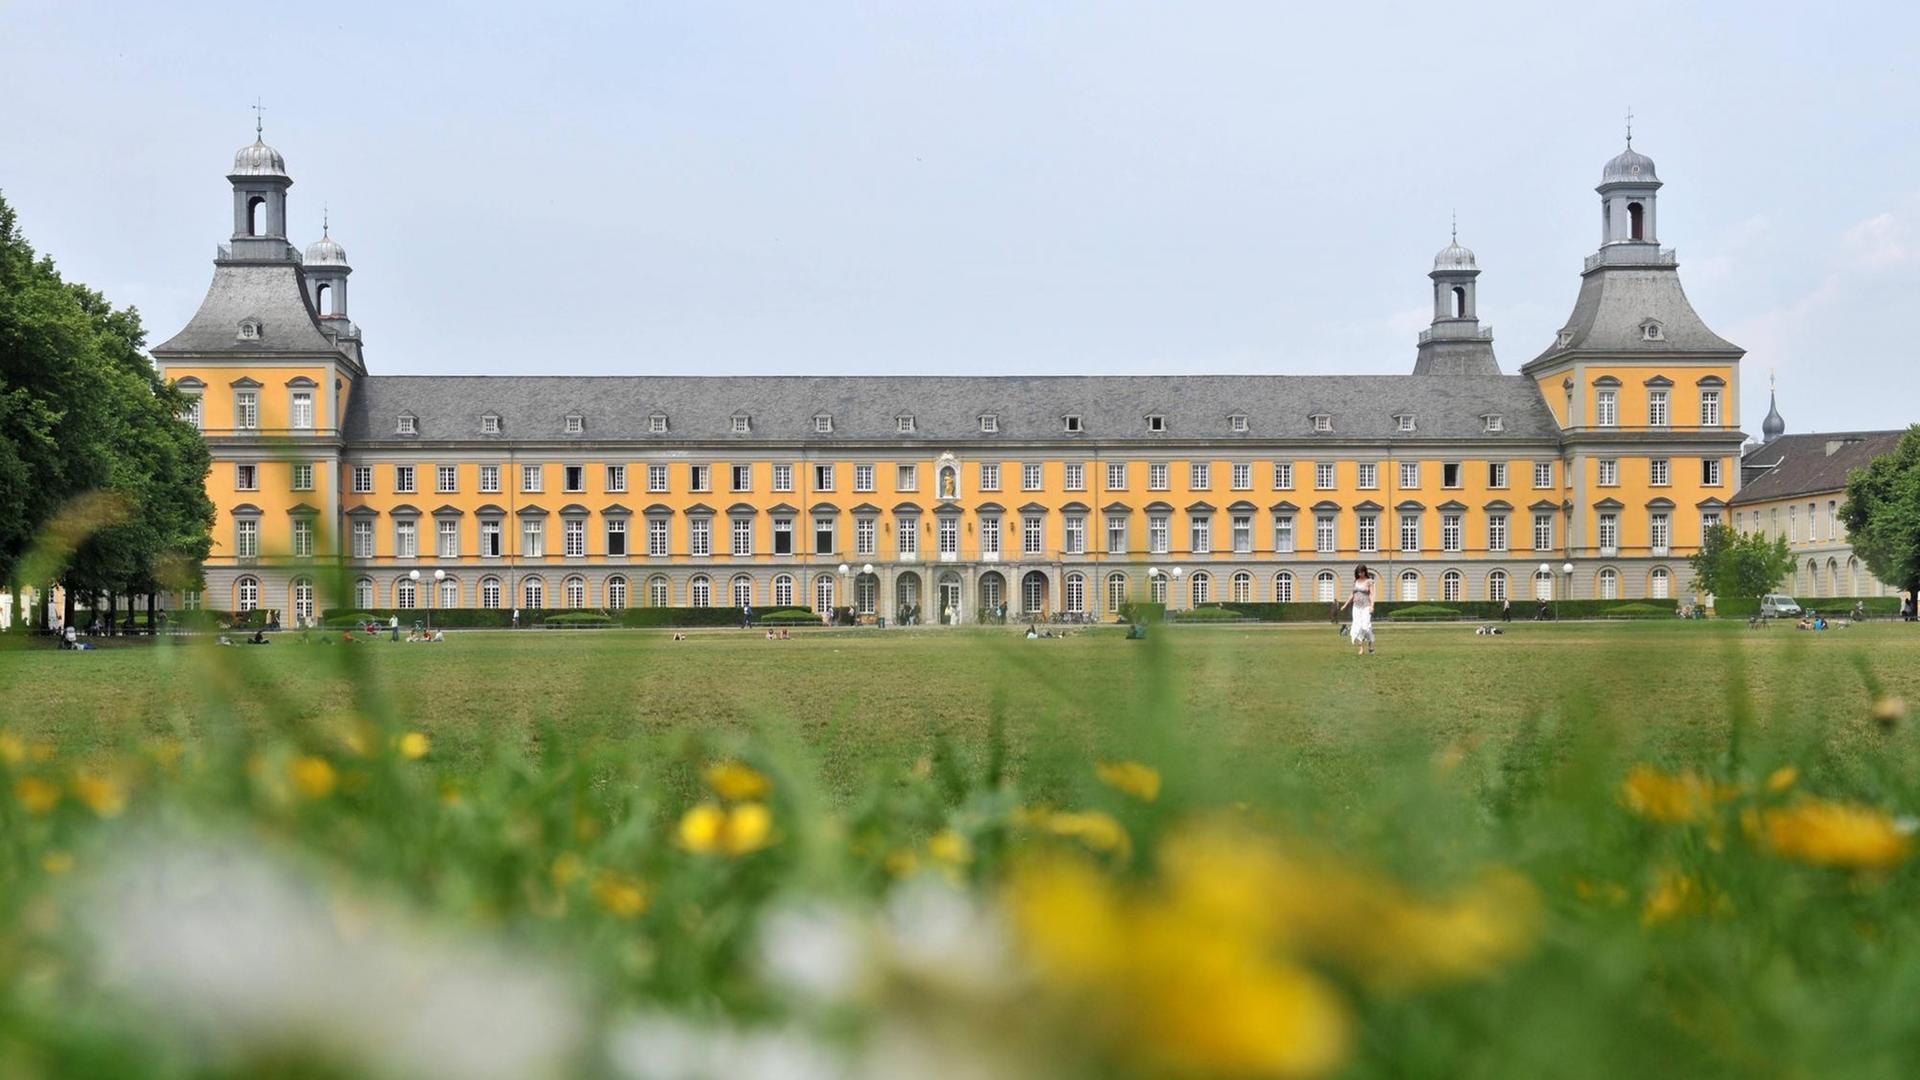 Die Uni Bonn ist 2019 mit dem Titel "Exzellenzuniversität" ausgezeichnet worden